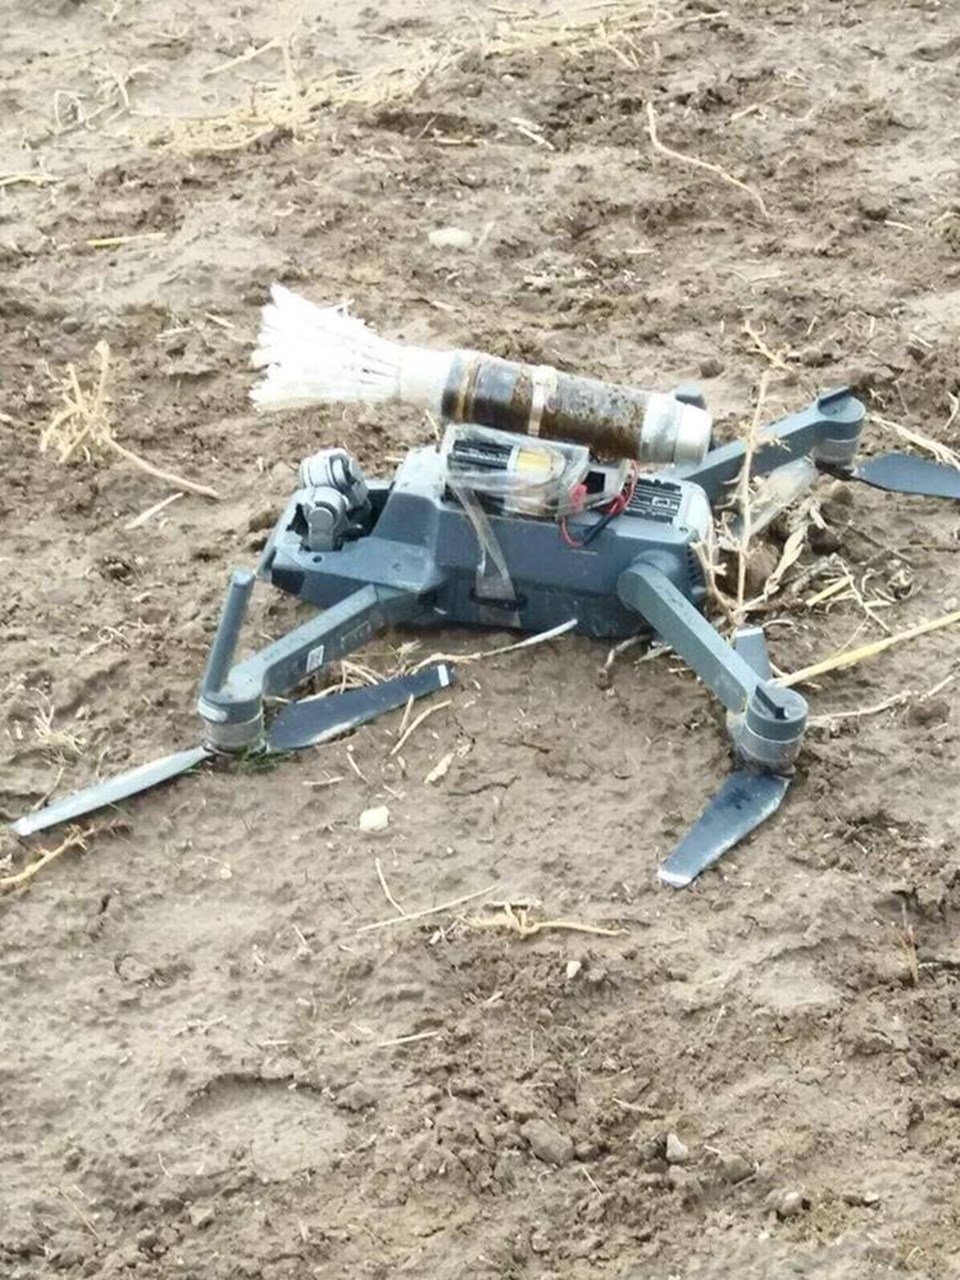 Ağrı'da bombalı PKK drone'u düşürüldü - 1